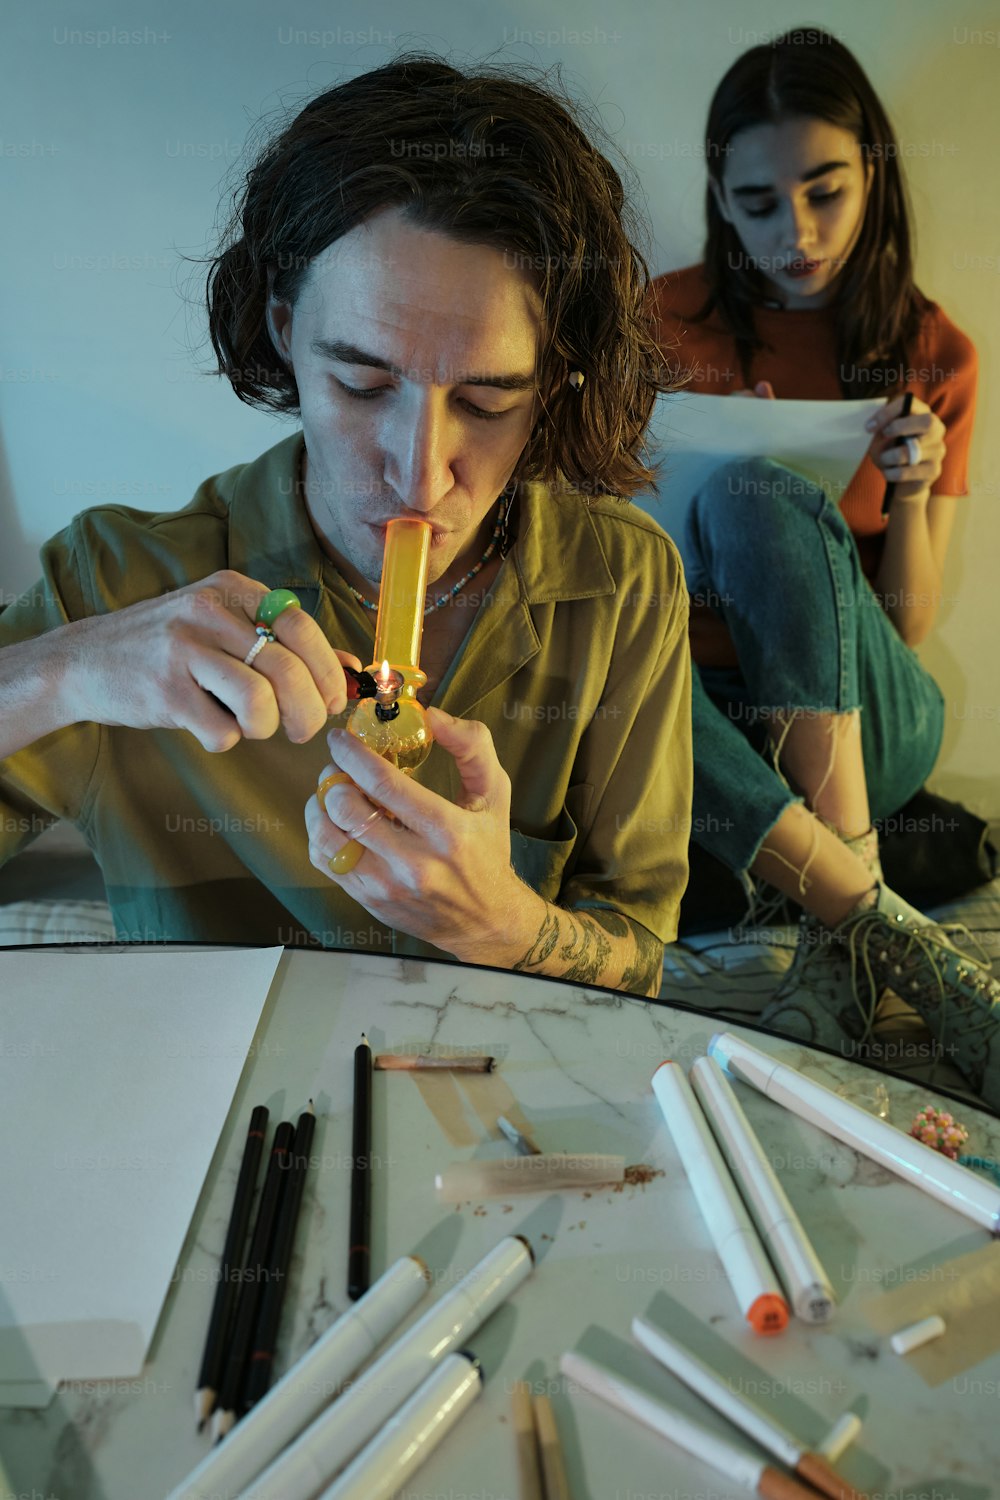 Une femme assise à une table avec une cigarette à la bouche